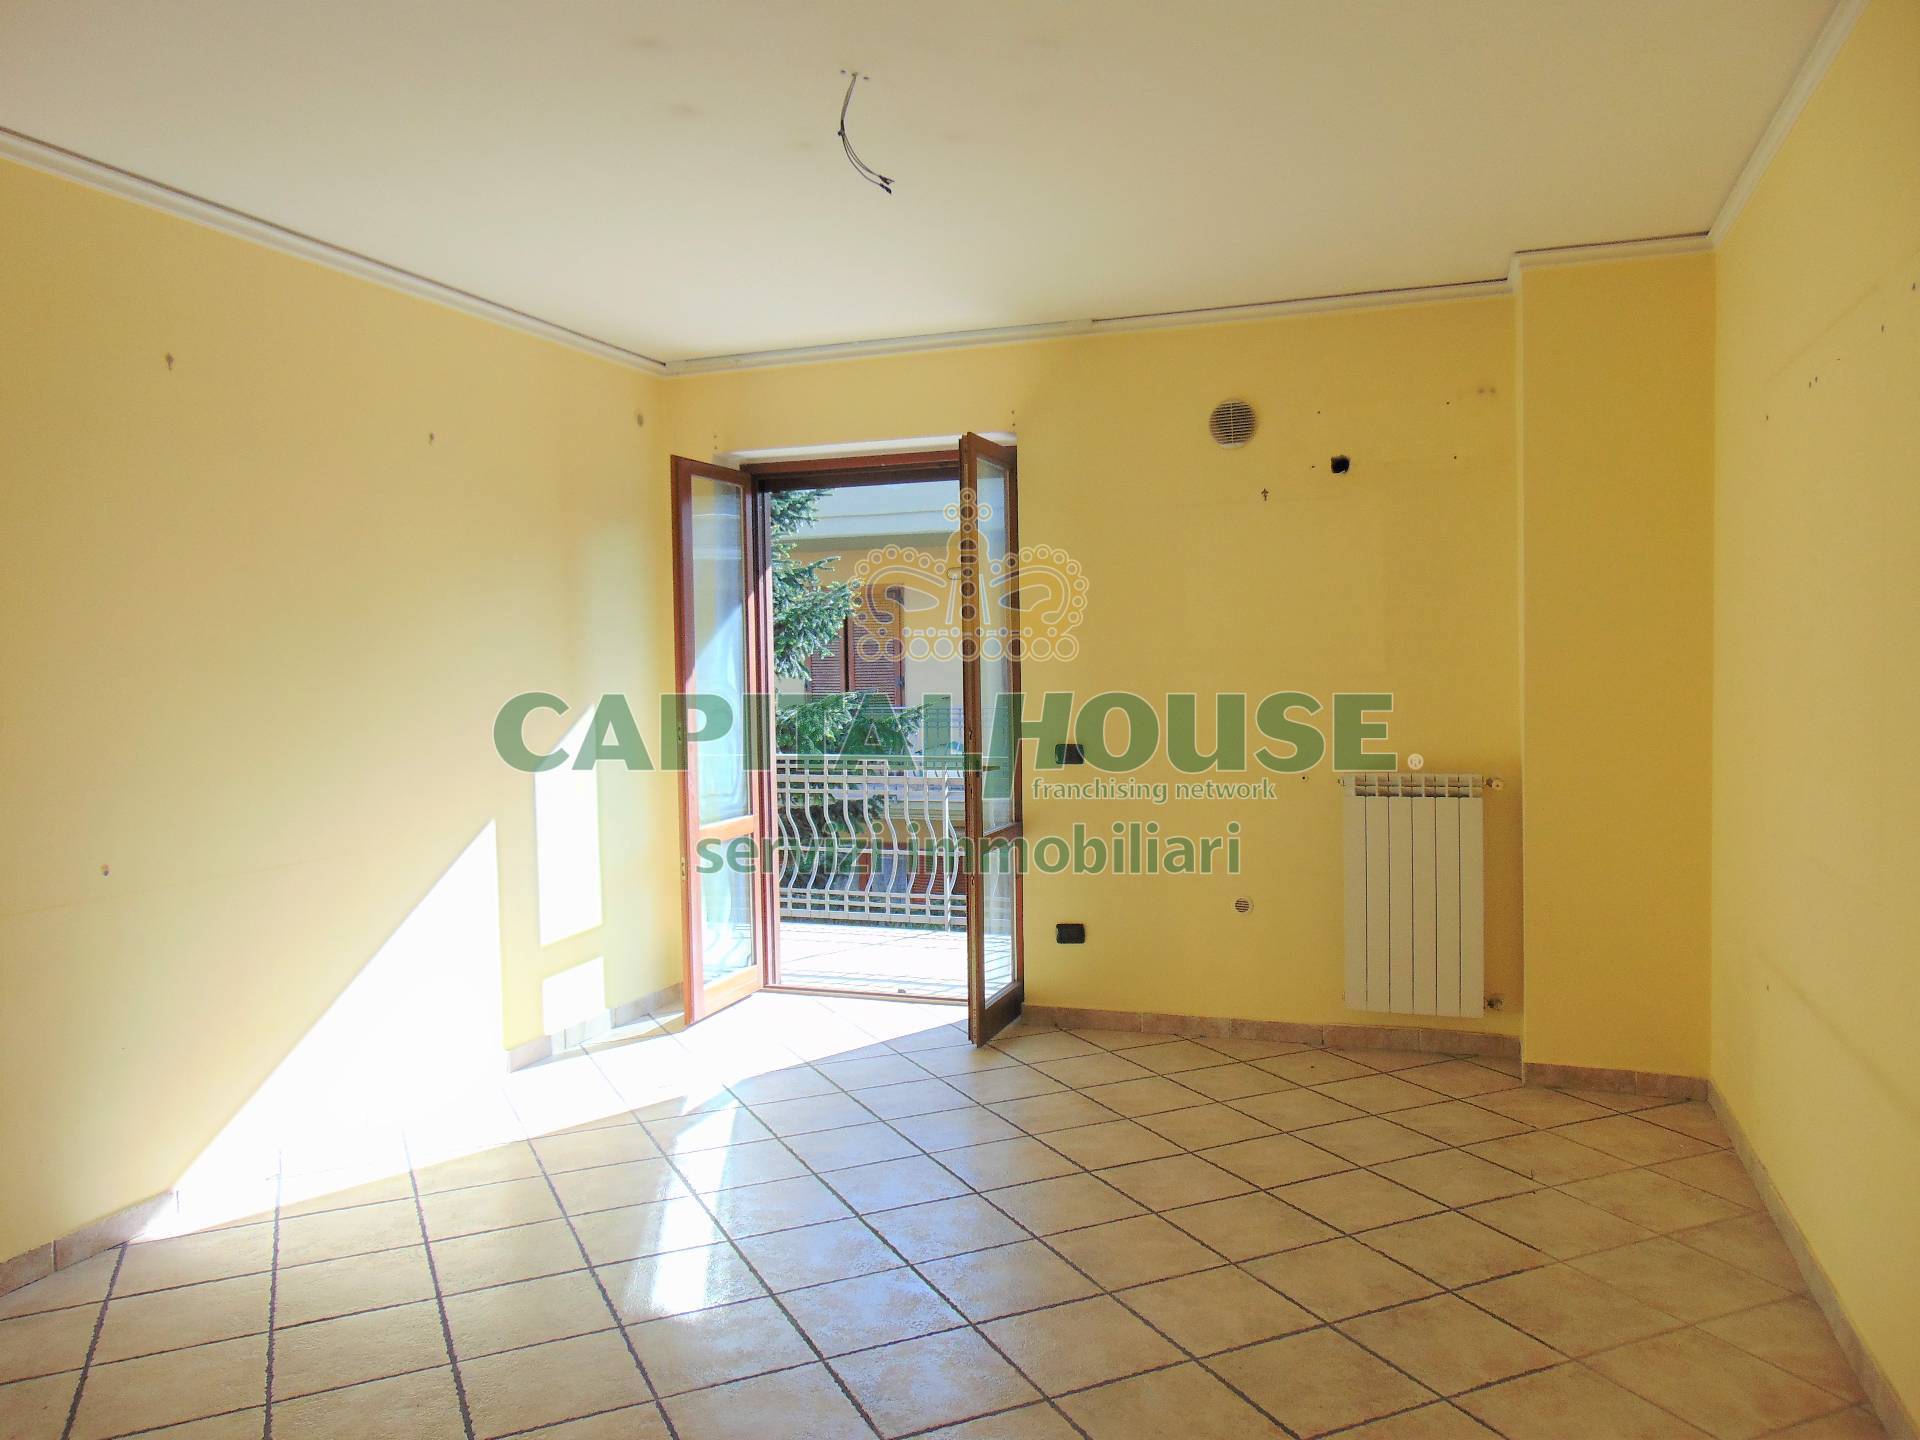 Appartamento in vendita a Sirignano, 3 locali, prezzo € 115.000 | CambioCasa.it